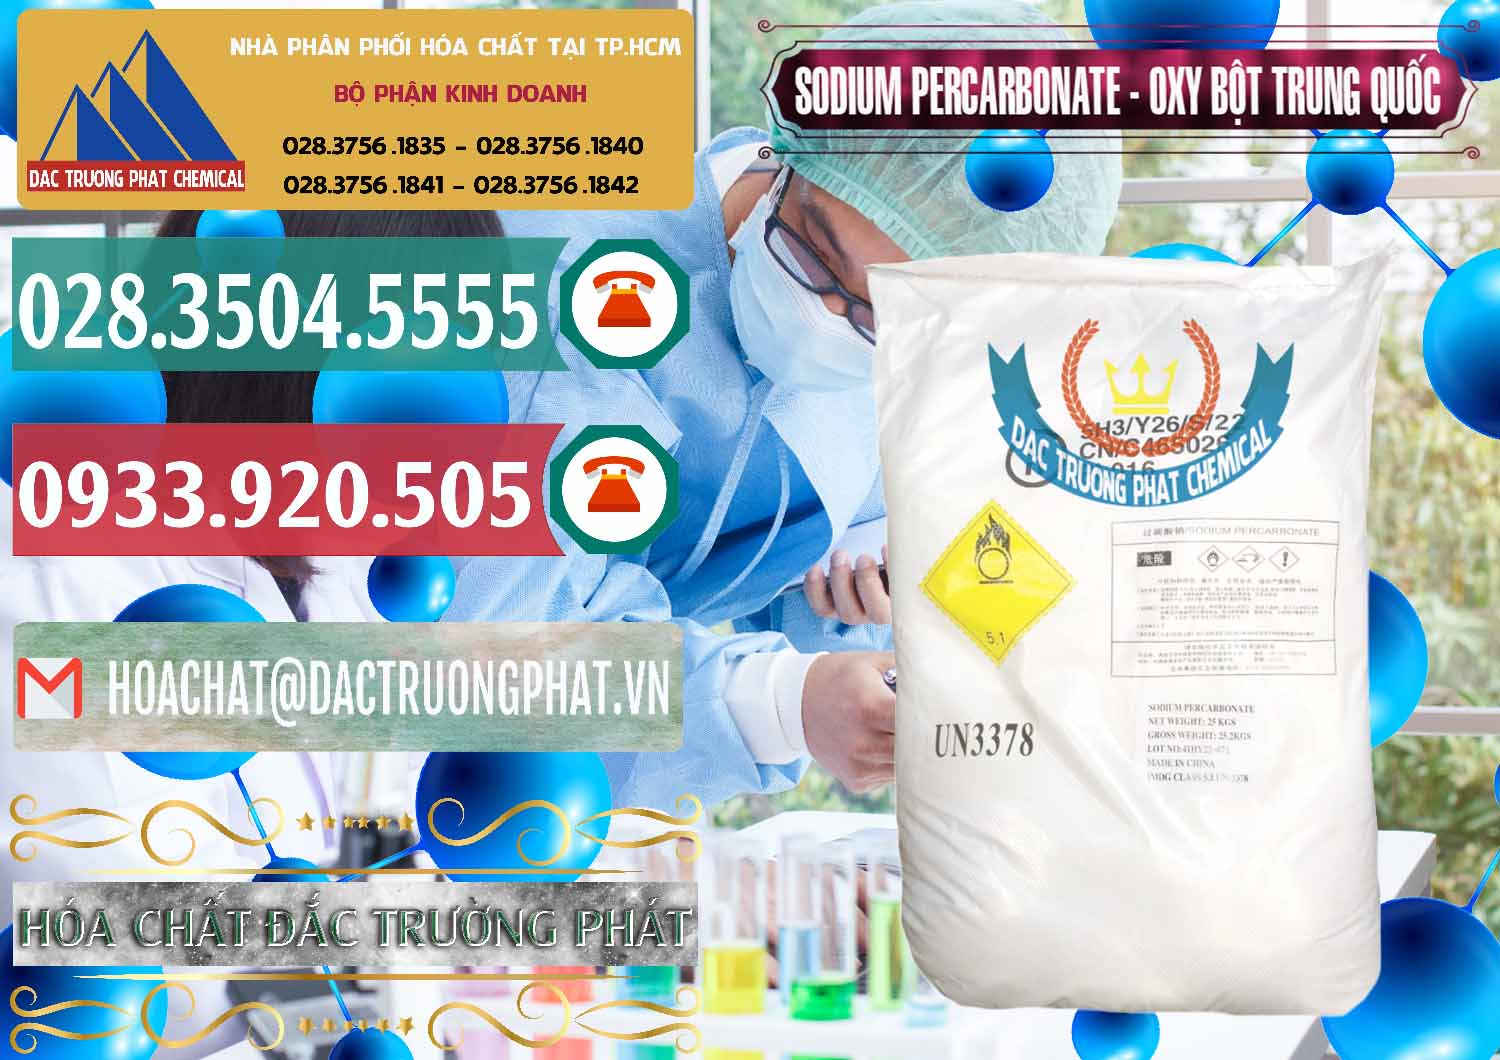 Cty chuyên phân phối - bán Sodium Percarbonate Dạng Bột Trung Quốc China - 0390 - Nơi cung cấp & phân phối hóa chất tại TP.HCM - muabanhoachat.vn